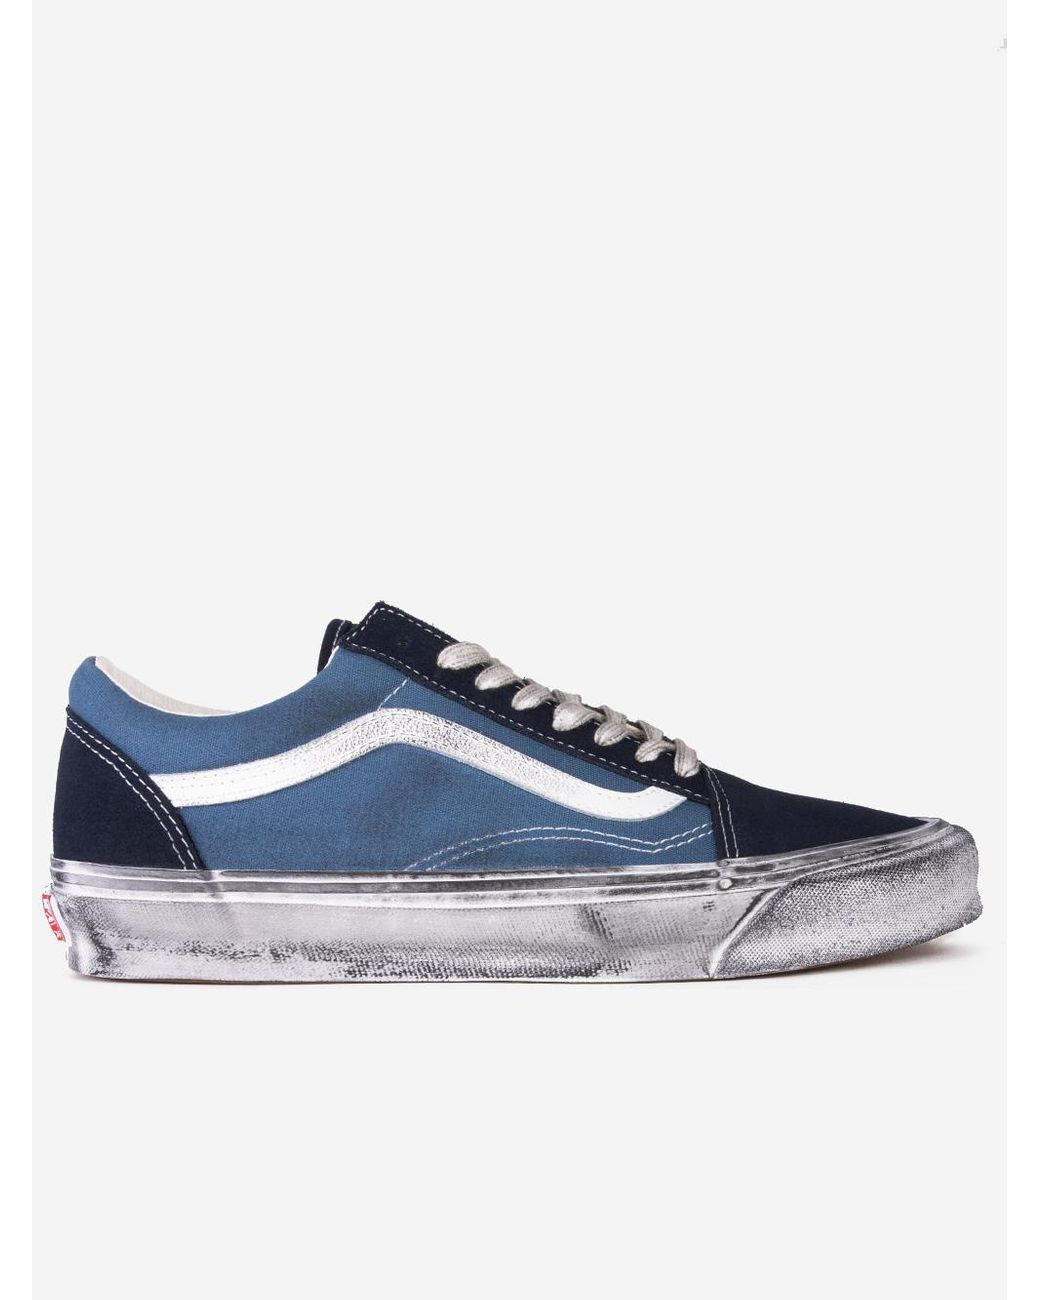 Vans Og Old Skool Lx Dirty Sole Sneakers in Blue | Lyst